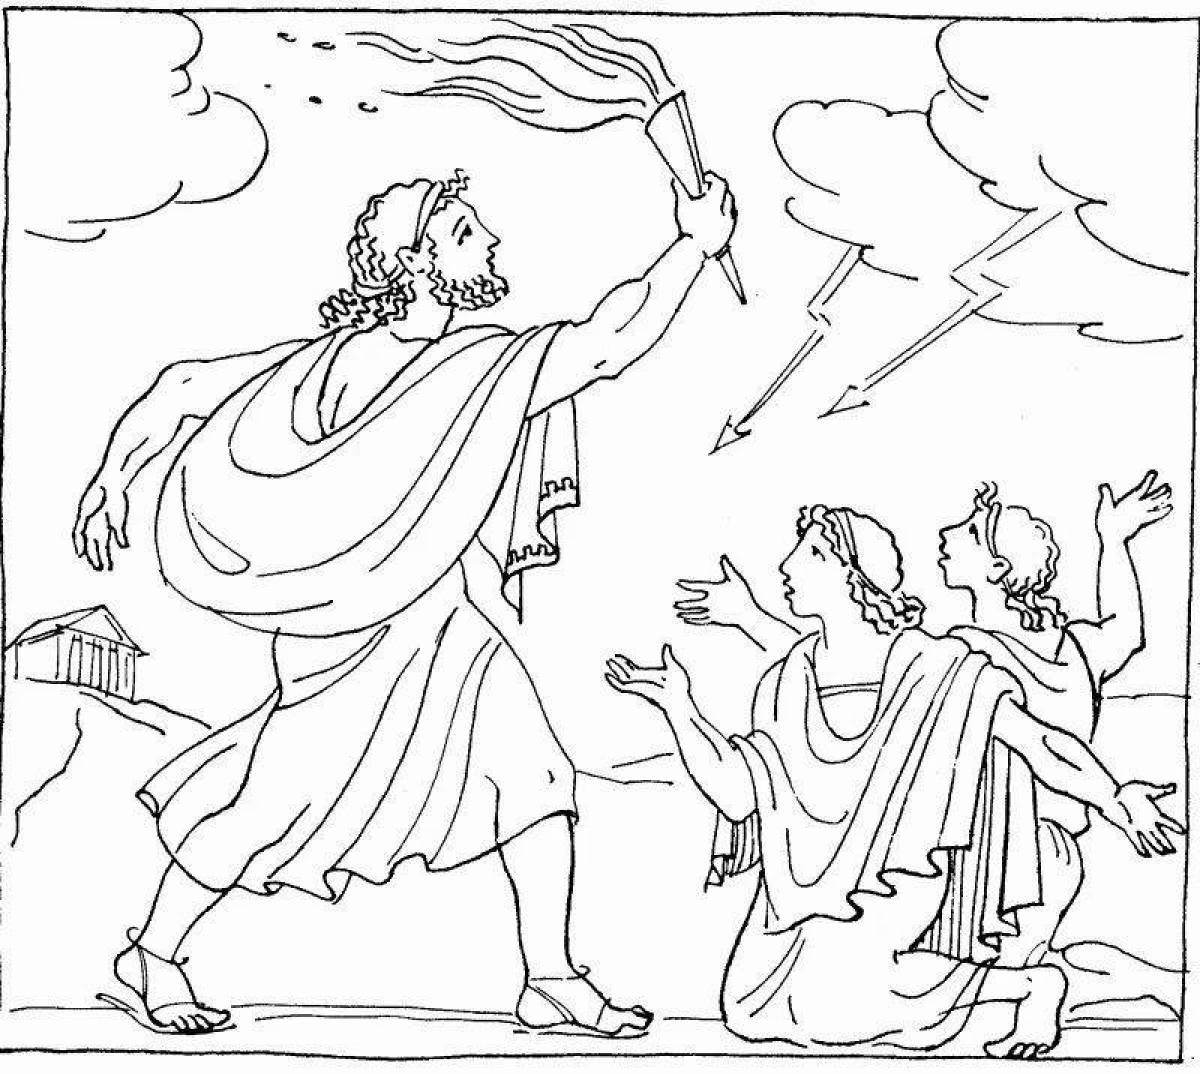 Величественная раскраска древнегреческих мифов